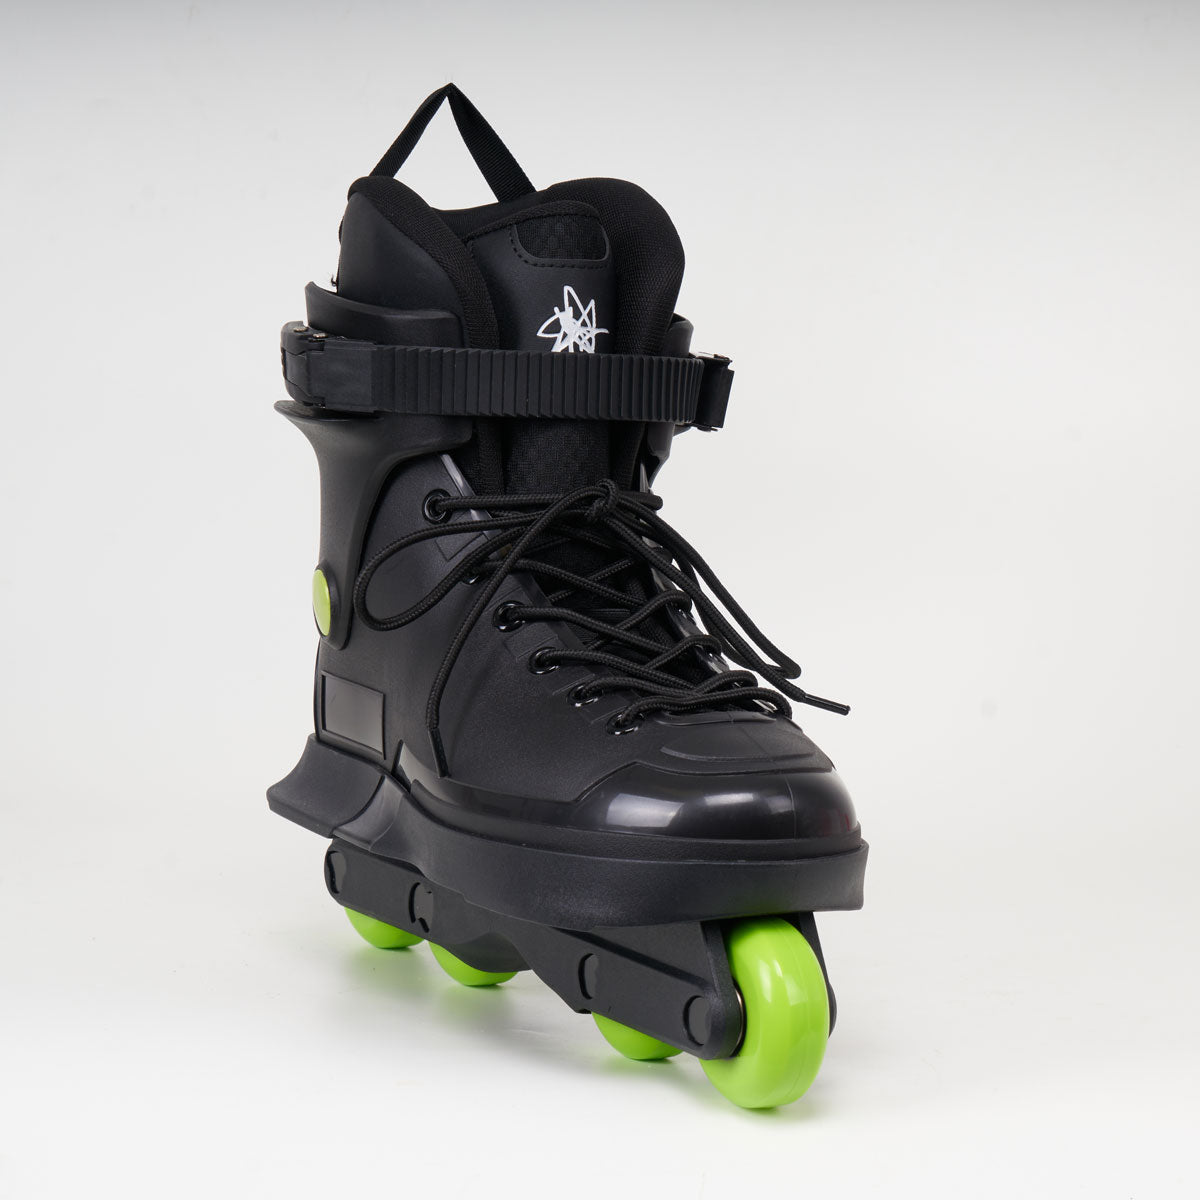 TNEC 58mm Green Skates